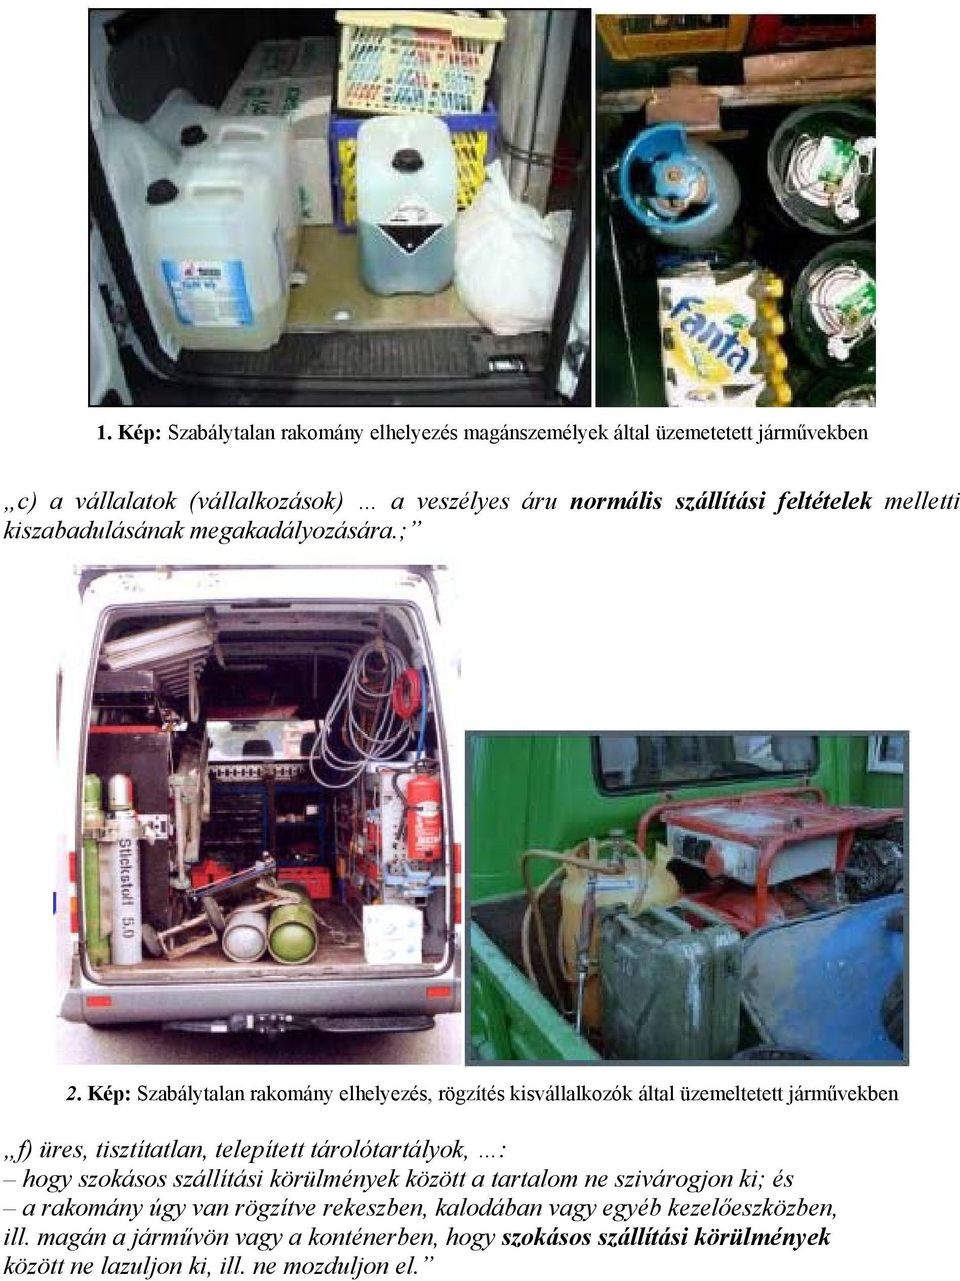 Kép: Szabálytalan rakomány elhelyezés, rögzítés kisvállalkozók által üzemeltetett járművekben f) üres, tisztítatlan, telepített tárolótartályok, : hogy